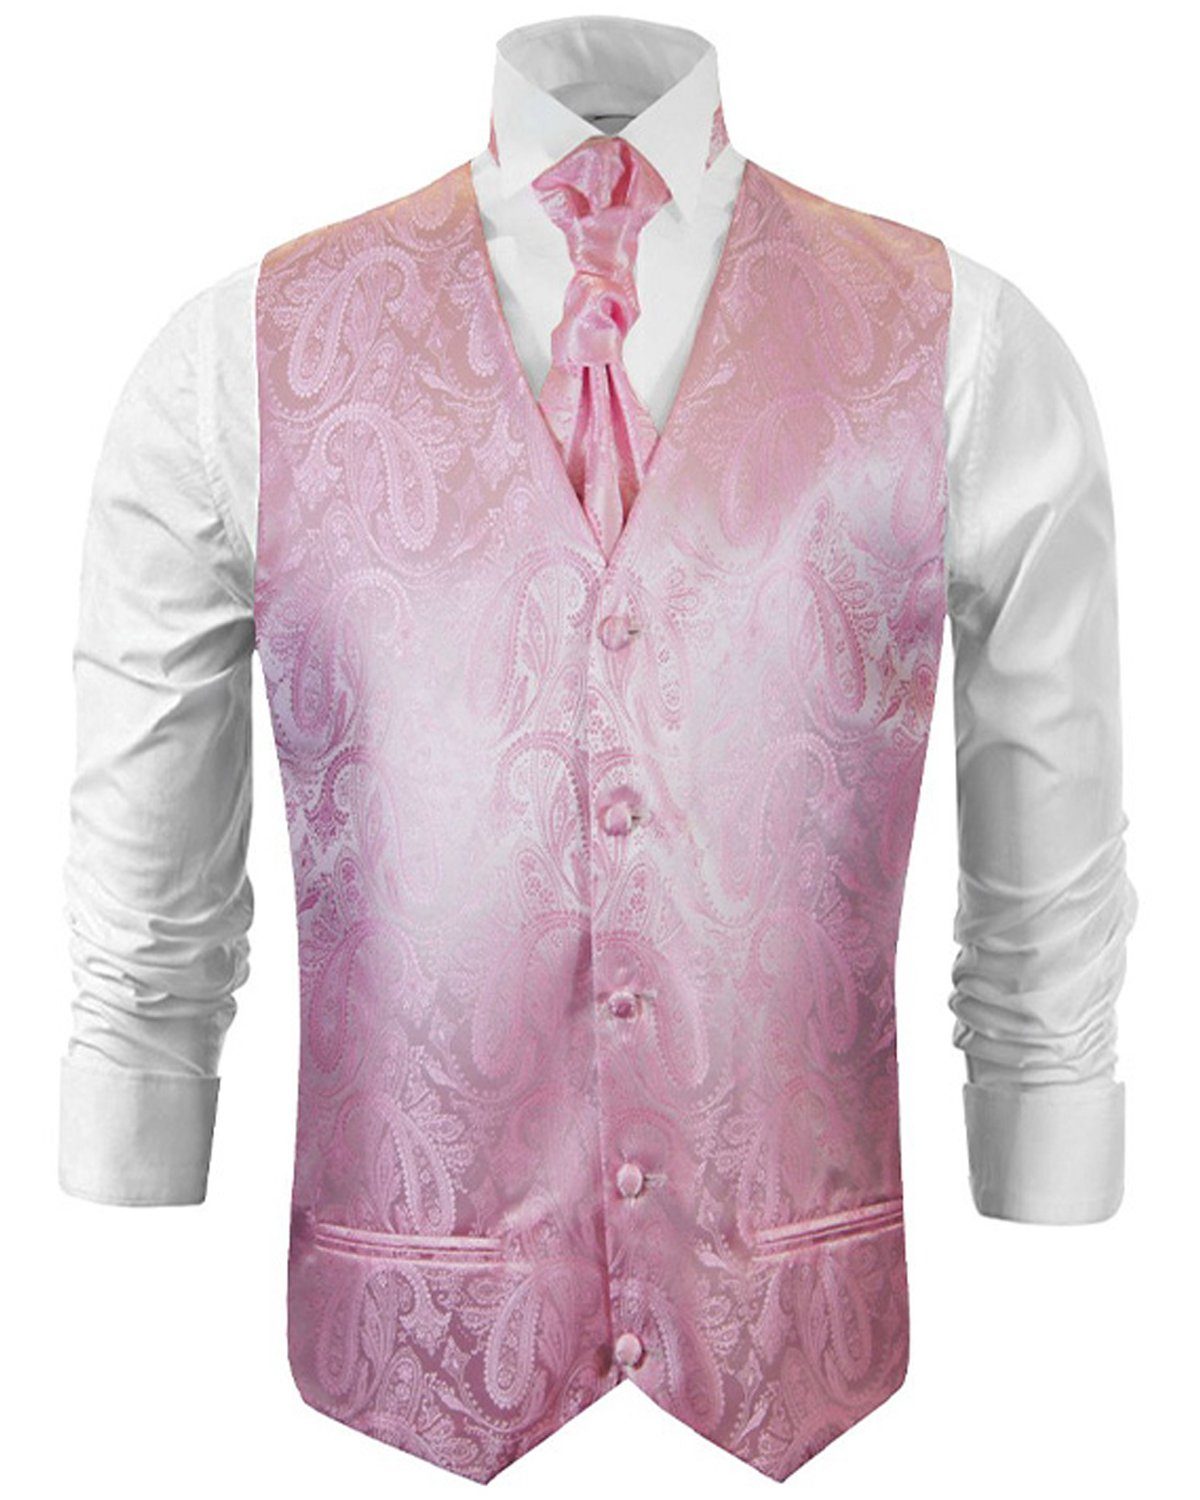 Paul Malone Anzugweste Herren Hochzeitsweste mit Plastron Set 2tlg pink paisley - Bräutigam (Set, 2-tlg., mit Weste und Plastron) rosa pink V94, Gr. 52 (M)